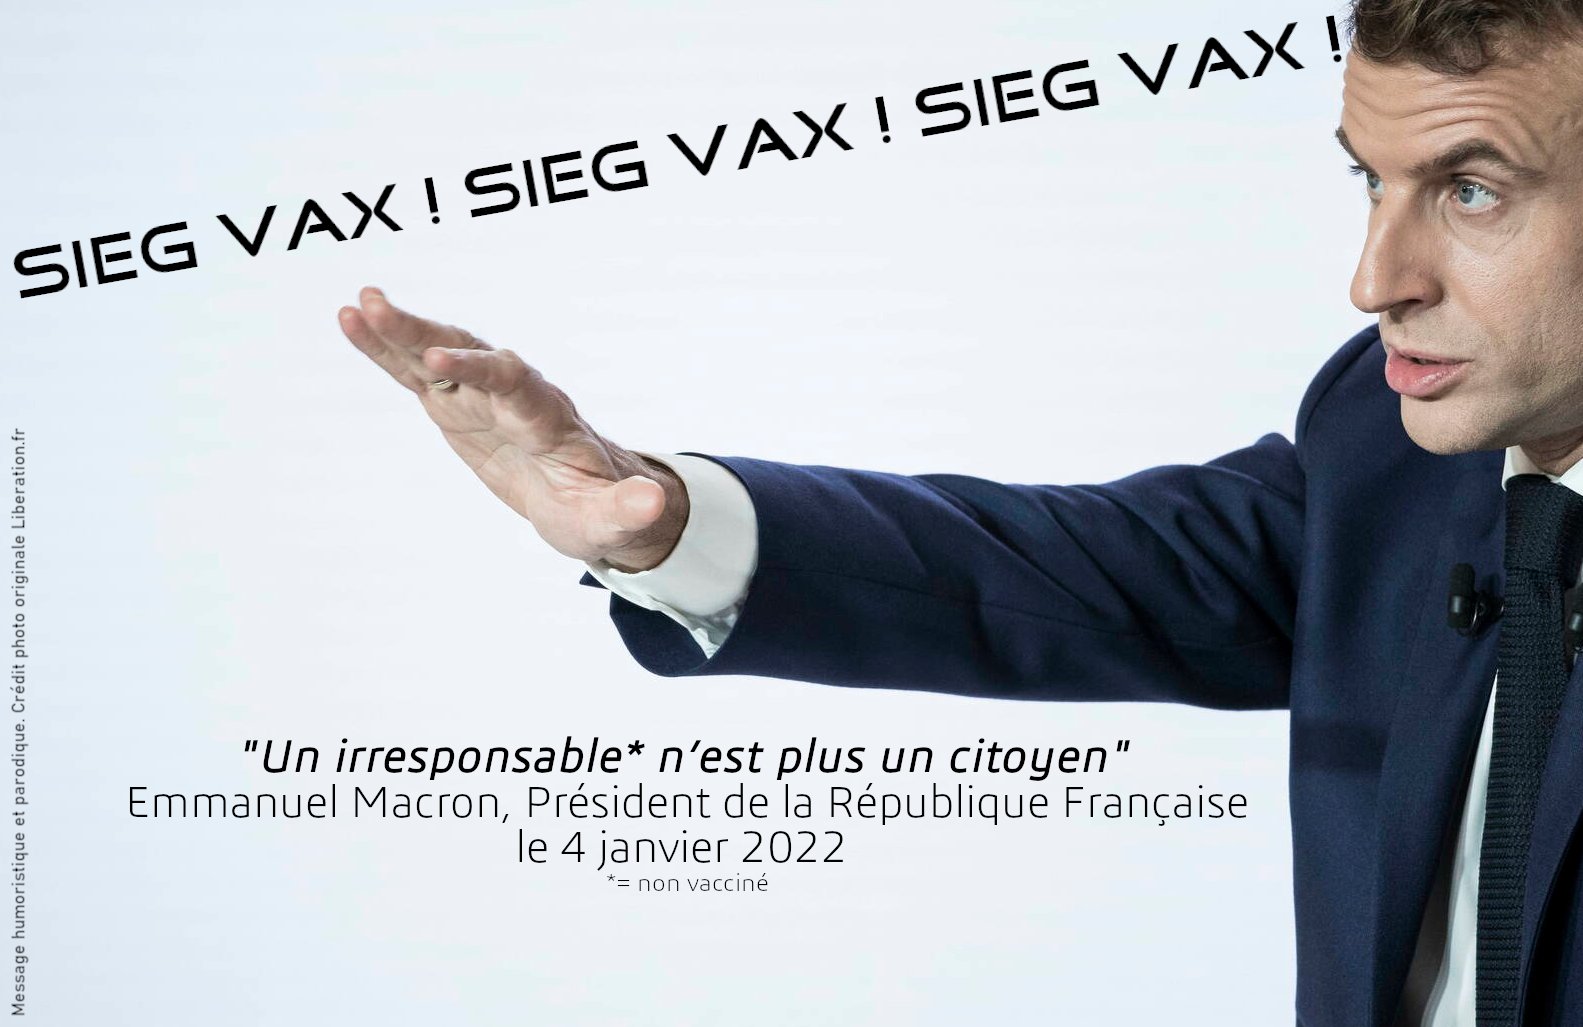 Sorumsuz bir kişi artık SiegVax.jpg kırmızı bölgesinde bir Macron vatandaşı değil